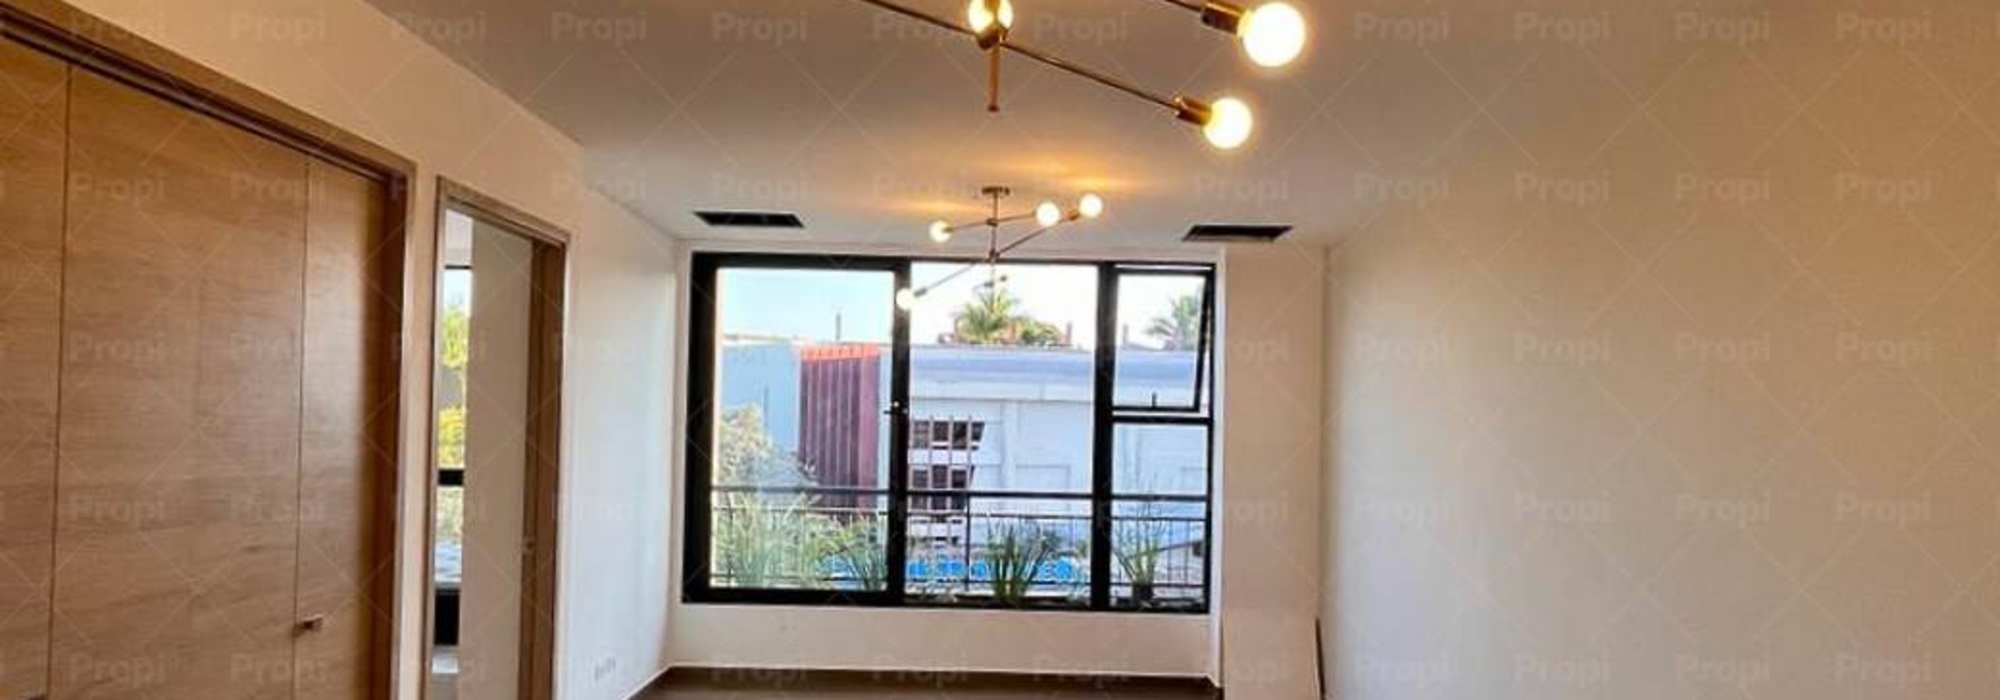 Apartment for rent in Torre Trelum, Colonia La Mascota, San Salvador #2261